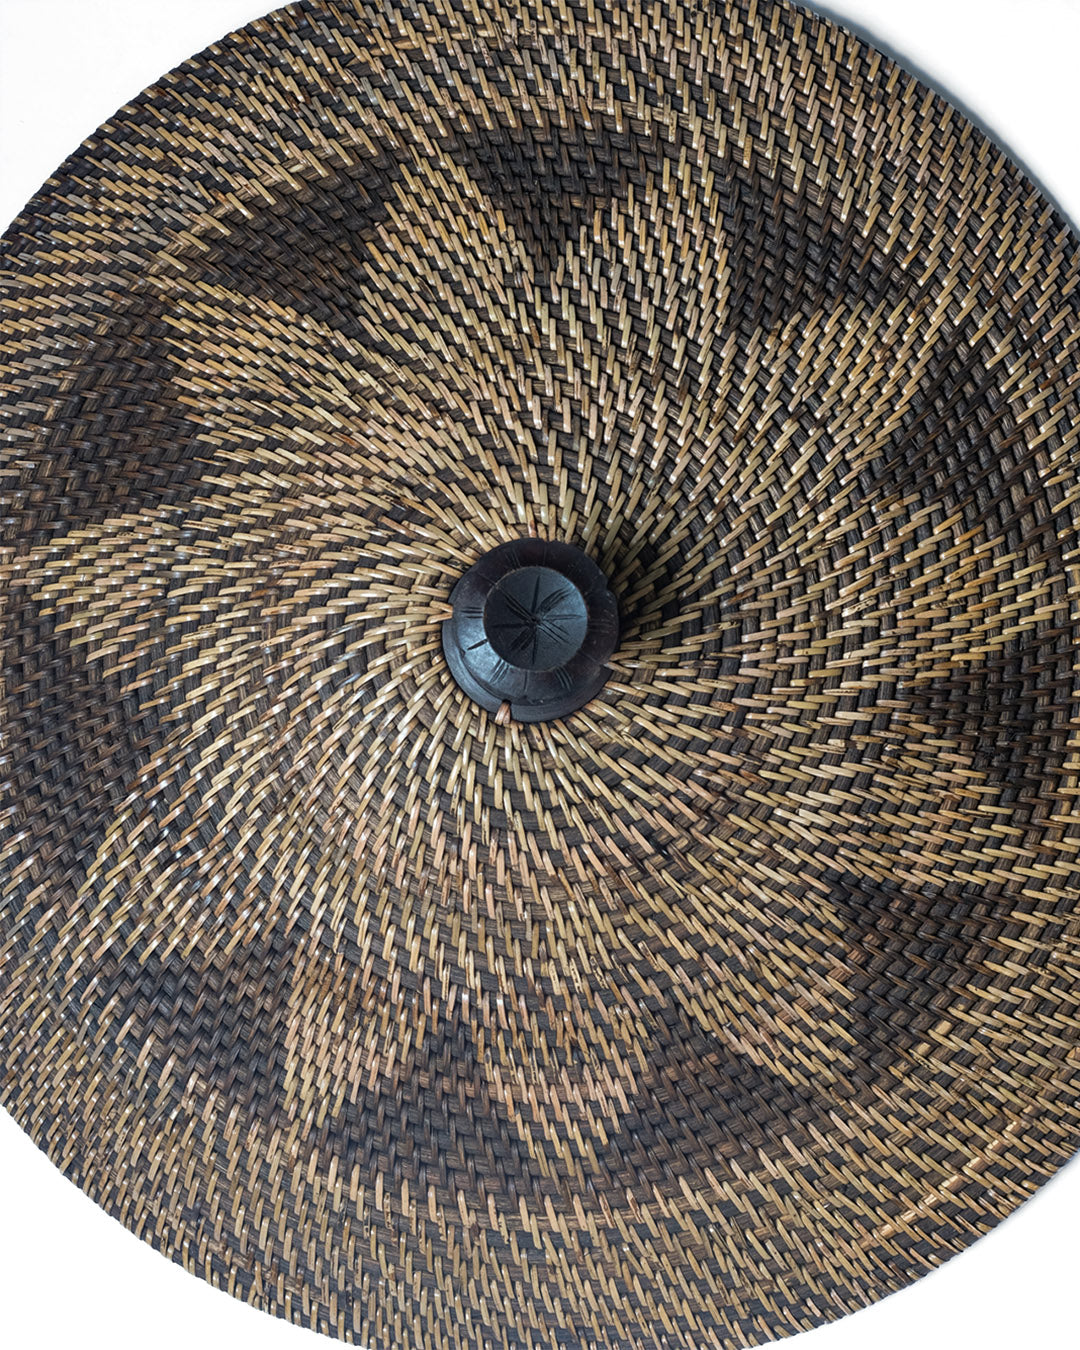 Cesto de ratán 100% natural Grande Pantai Sejile decorativo con tapa y agarre de madera tallado, hecho a mano con acabado natural con dibujo, 2 medidas redondo, fabricado en Indonesia